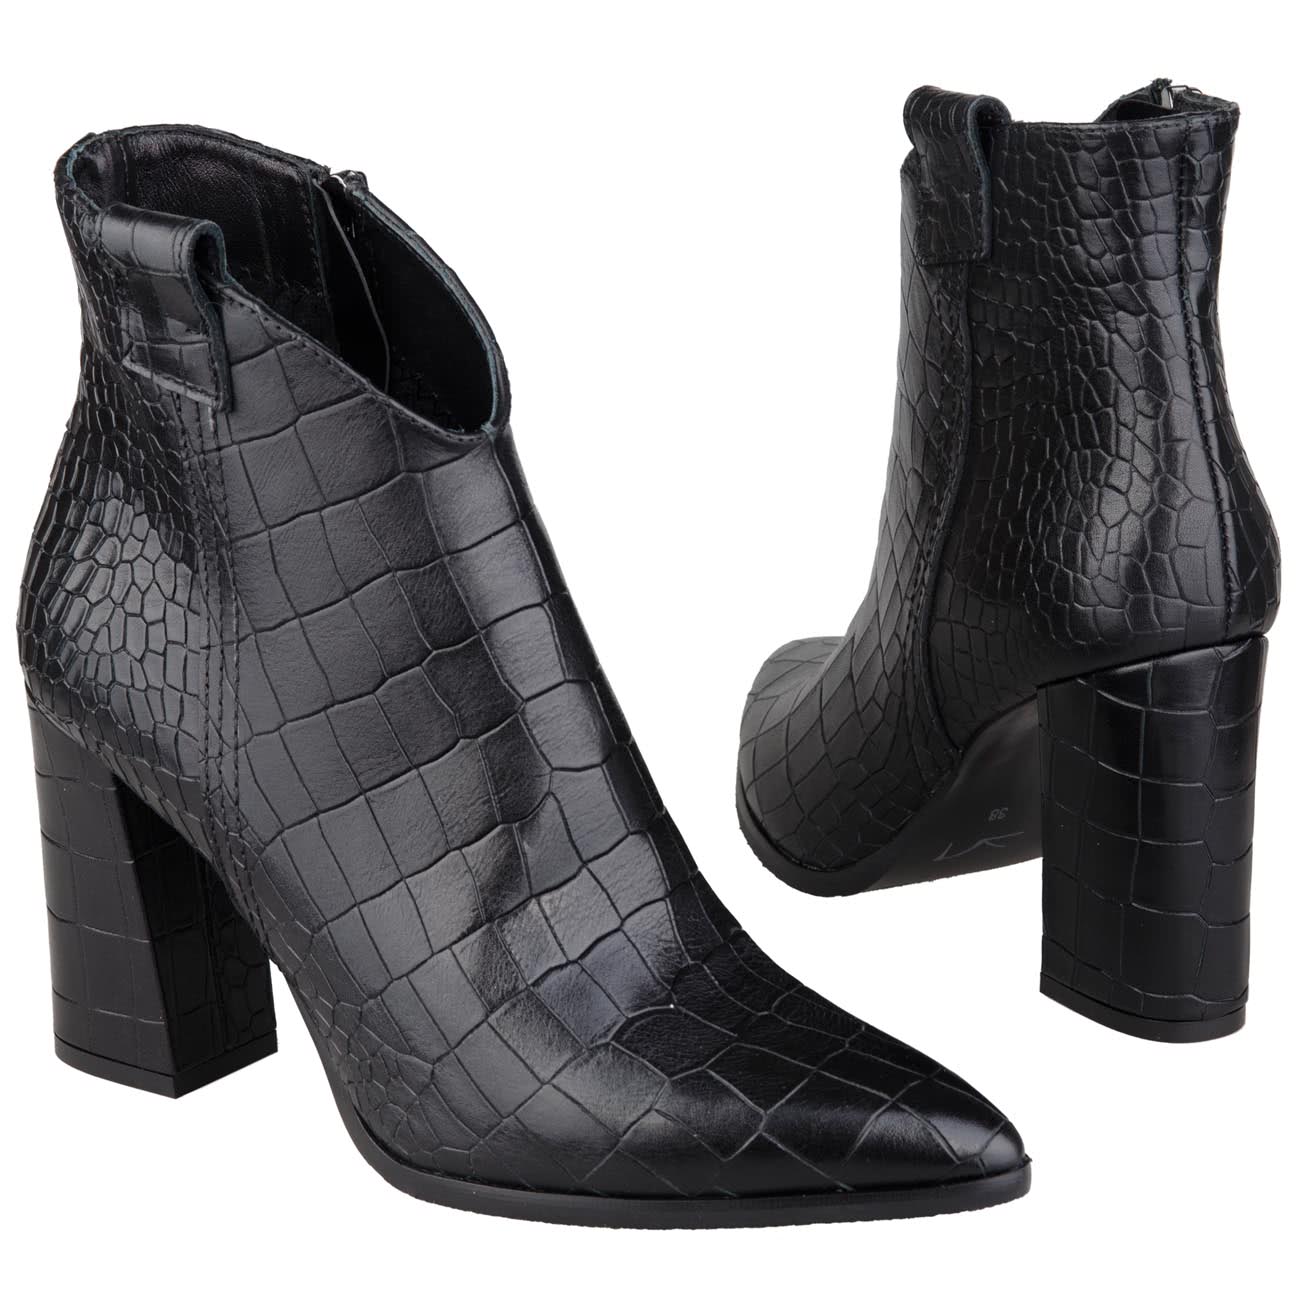 Кожаные женские ботильоны на высоком модном расклешенном каблуке 9.5 смкупить в интернет магазине Kwinto